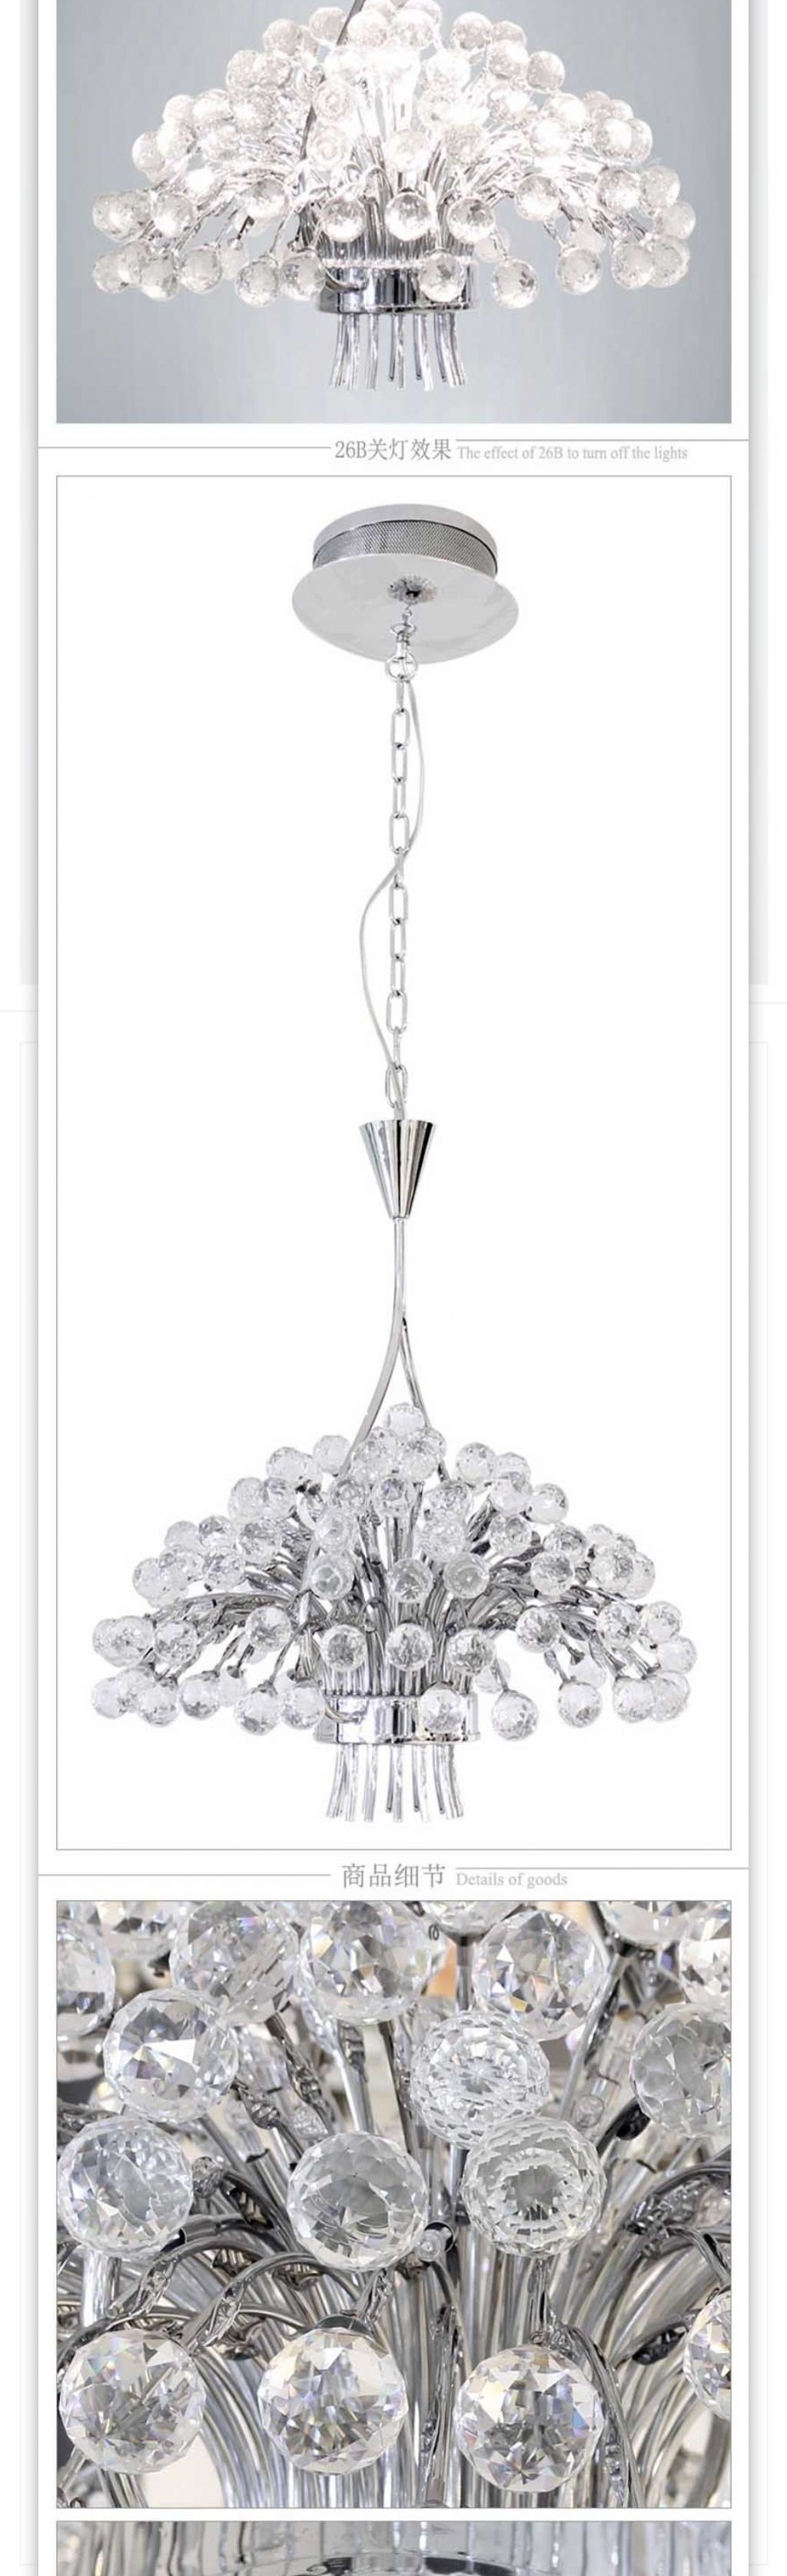 时尚优雅的水晶吊灯灯具描述